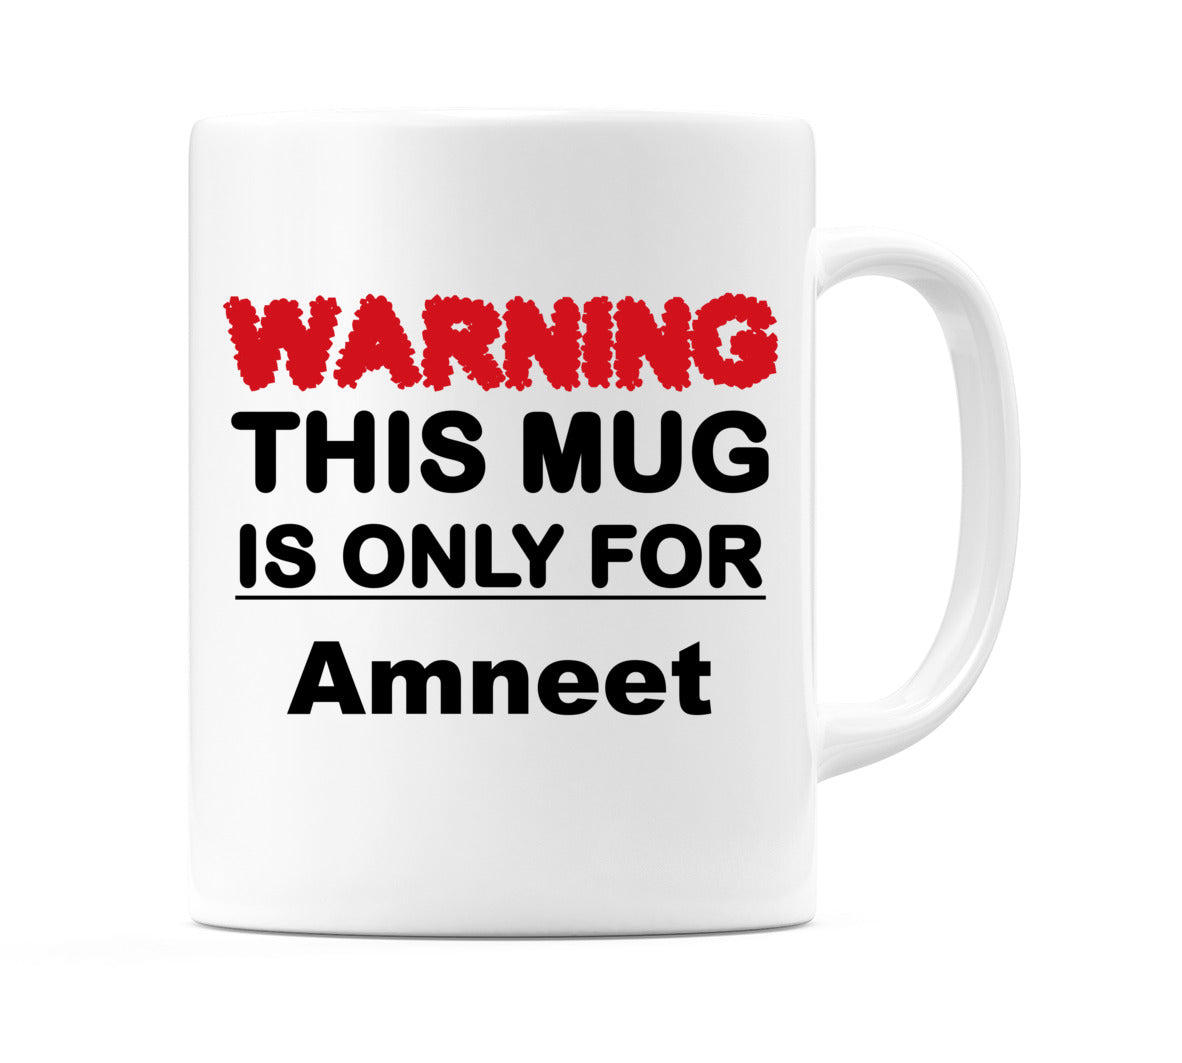 Warning This Mug is ONLY for Amneet Mug